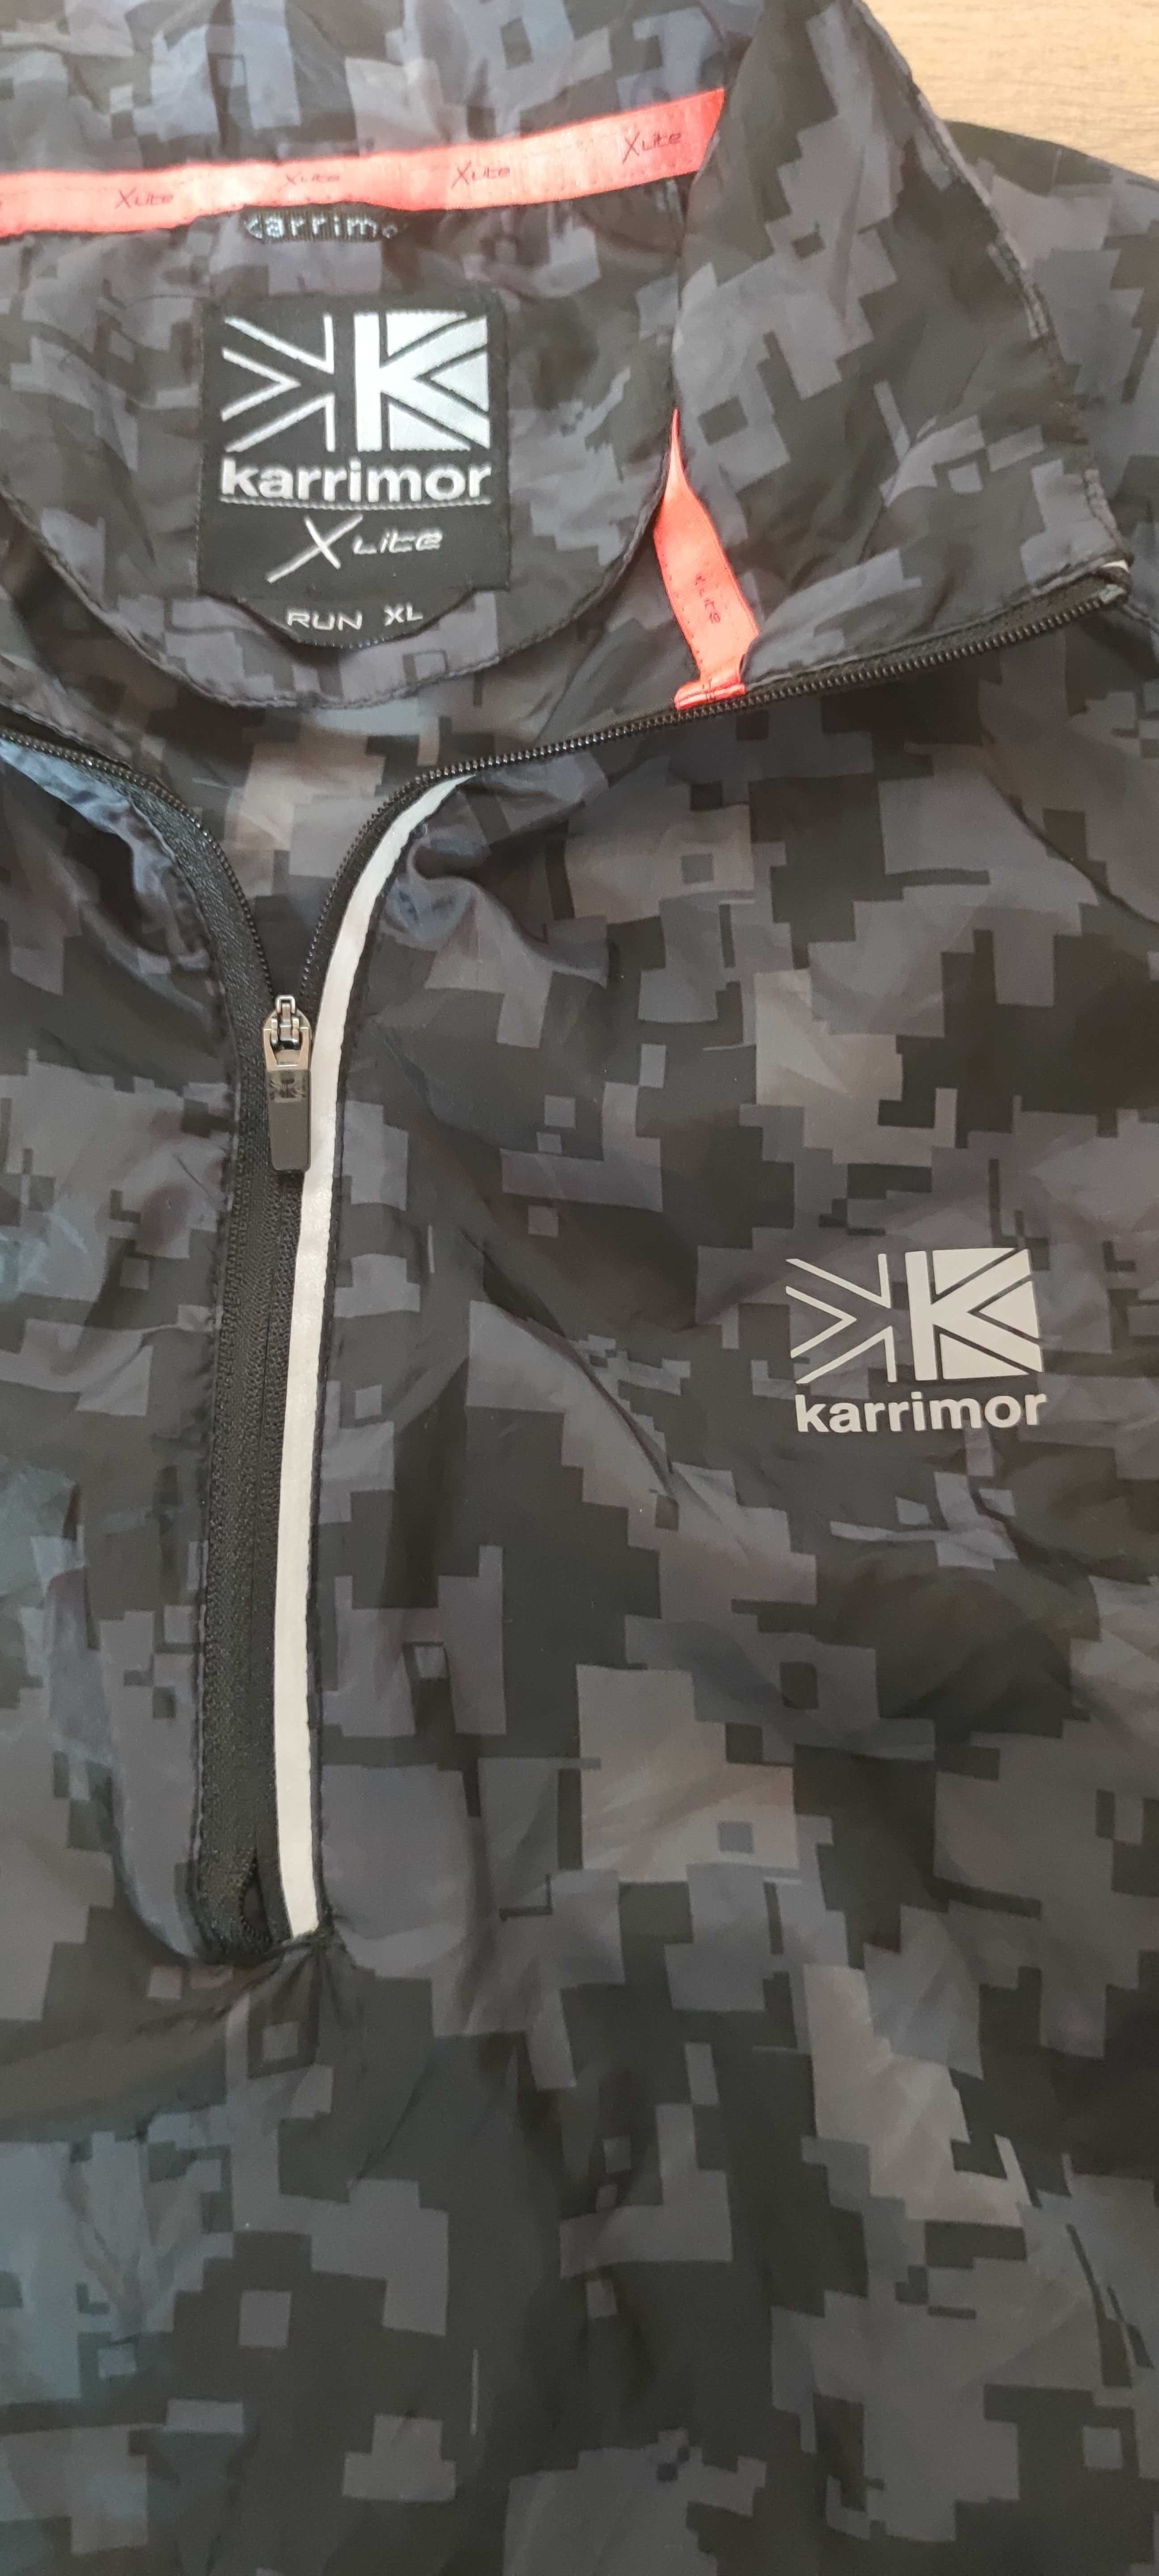 Jak nowa Karrimor XL kurtka męska wiatrówka do biegania